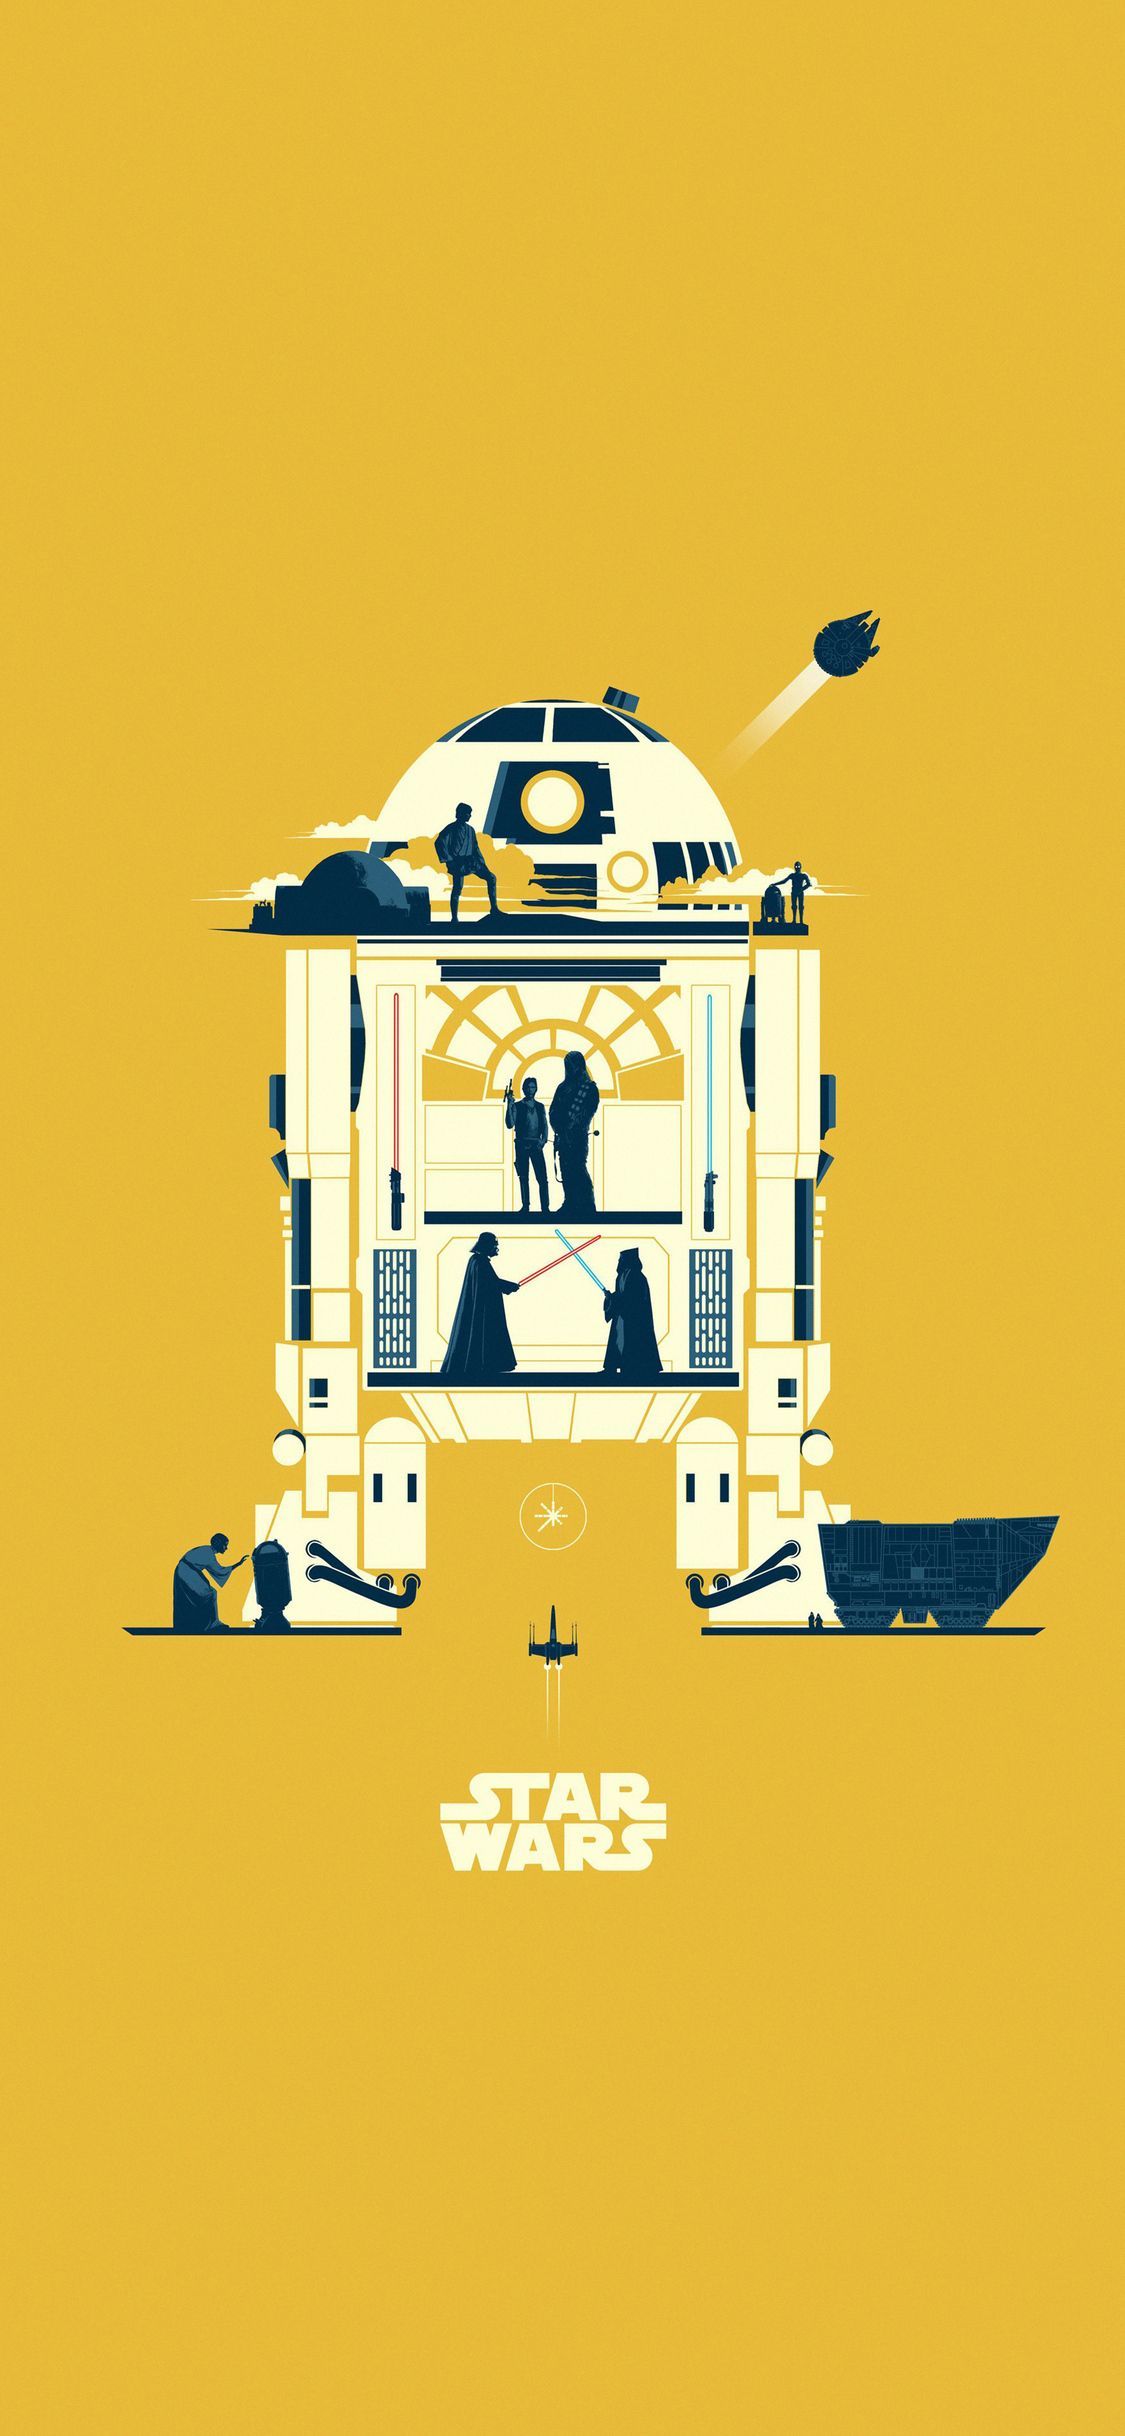 Star Wars iPhone X Minimalistic Wallpaper